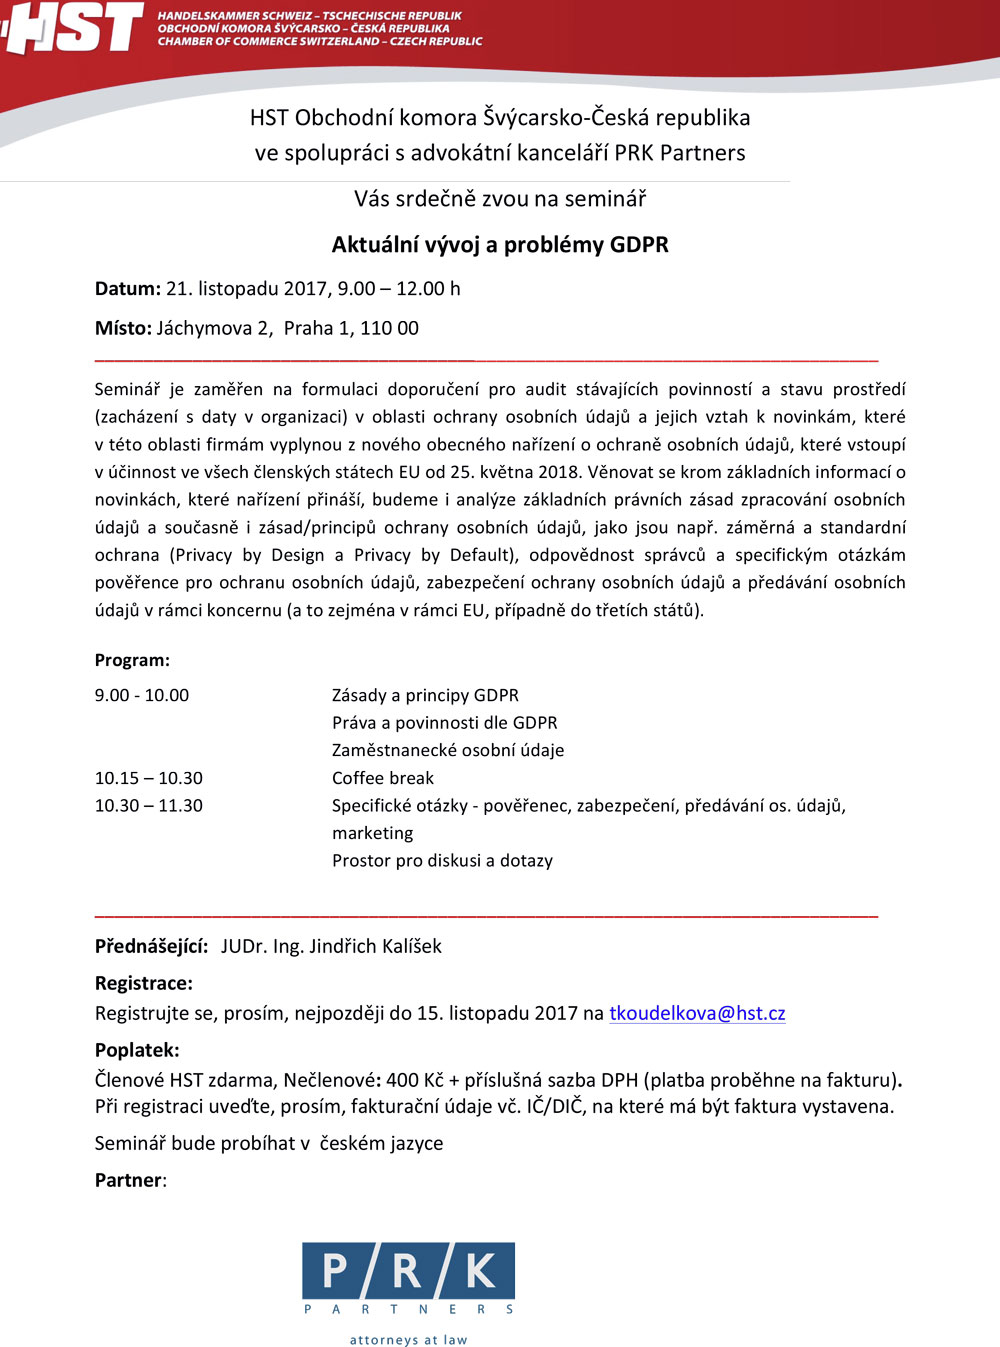 Pozvánka seminář Aktuální vývoj a problémy GDPR